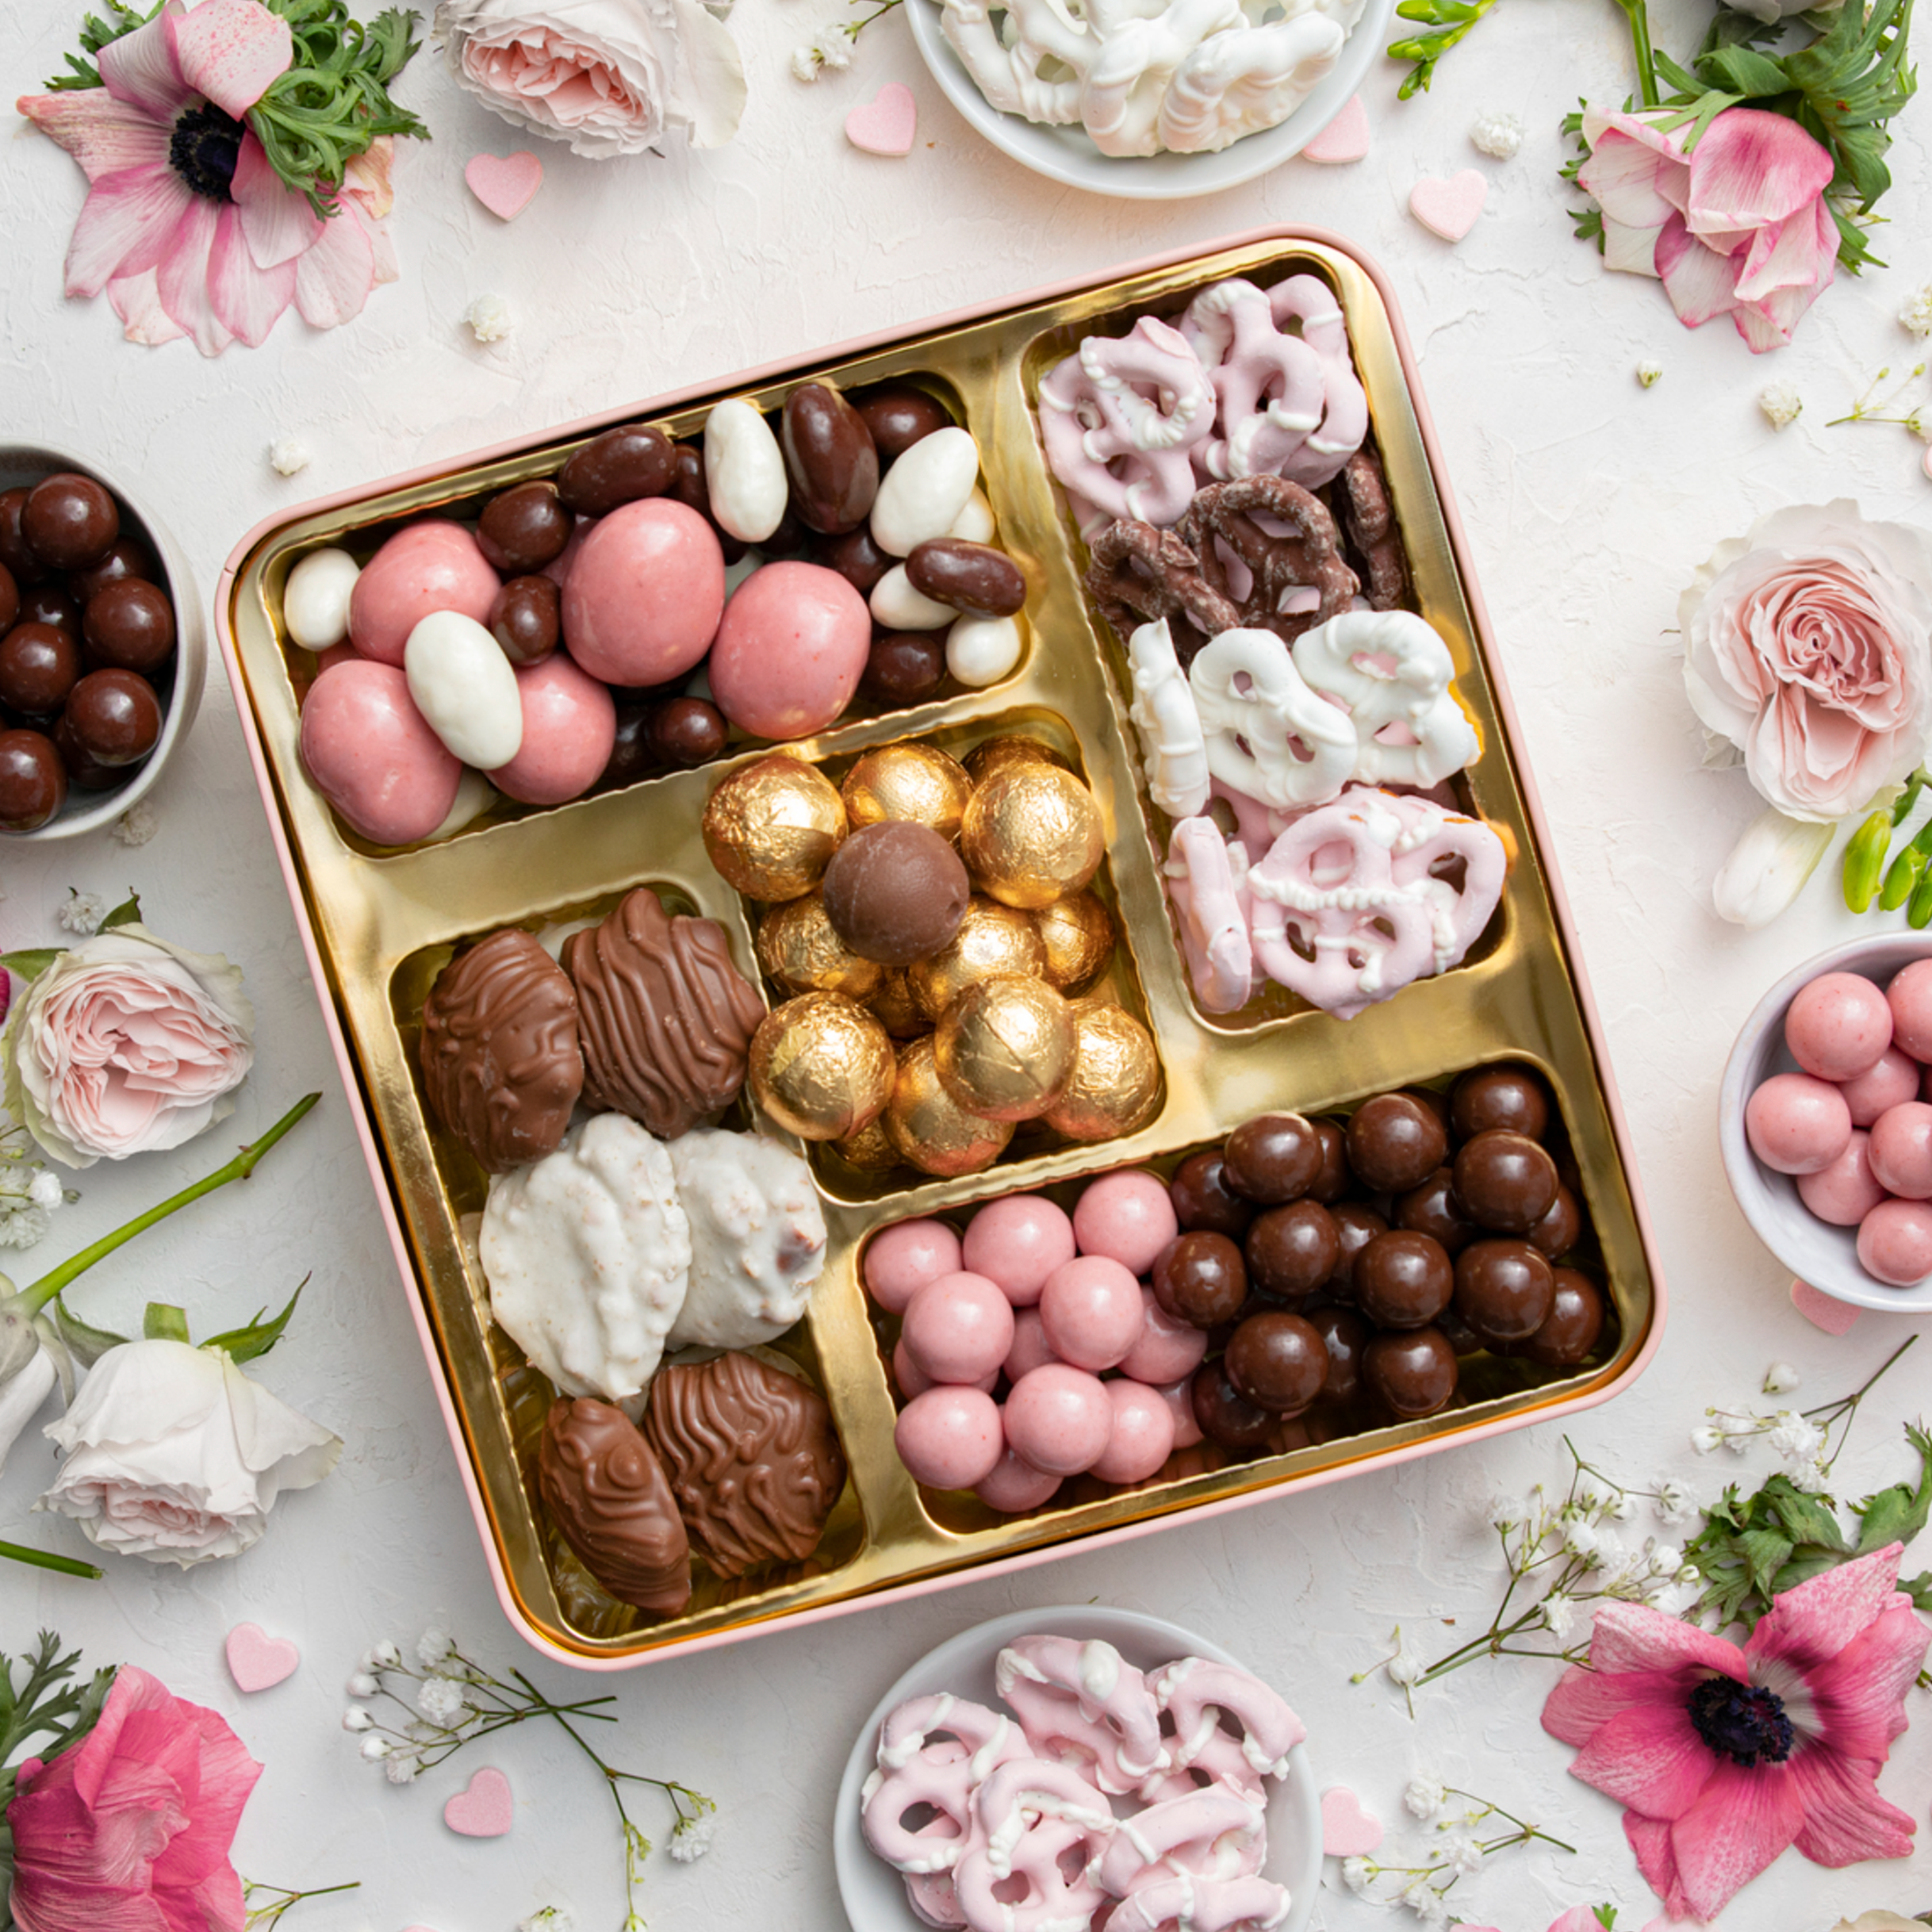 Valentine's Surprise Gift Basket - Chocolate Basket